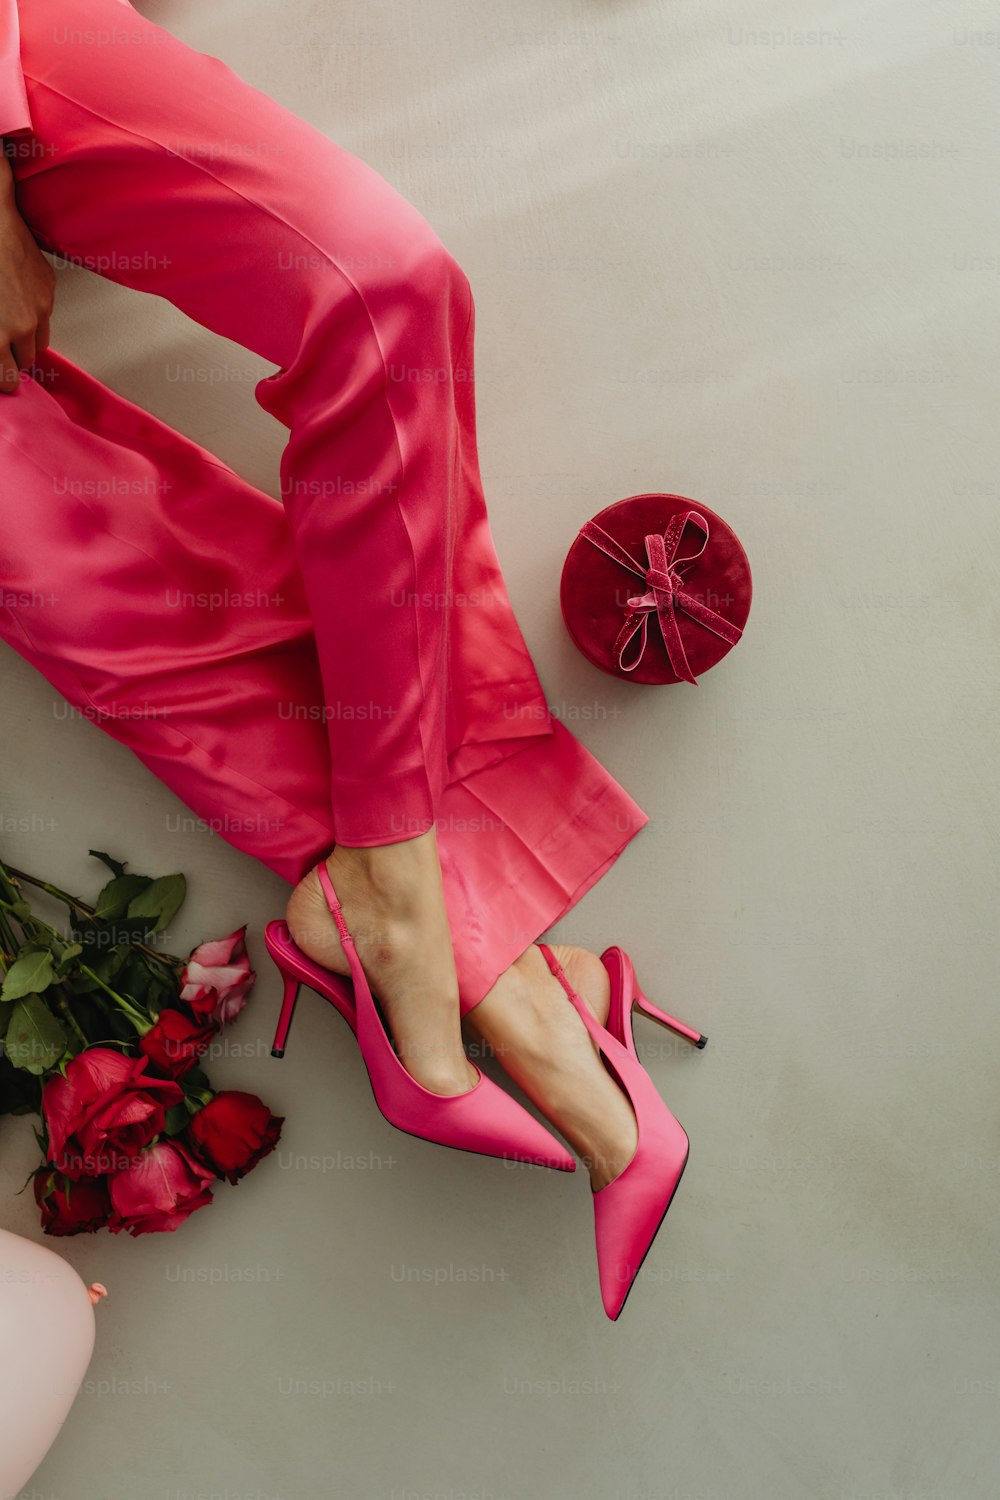 Les pieds d’une femme en chaussures roses à côté d’un bouquet de roses